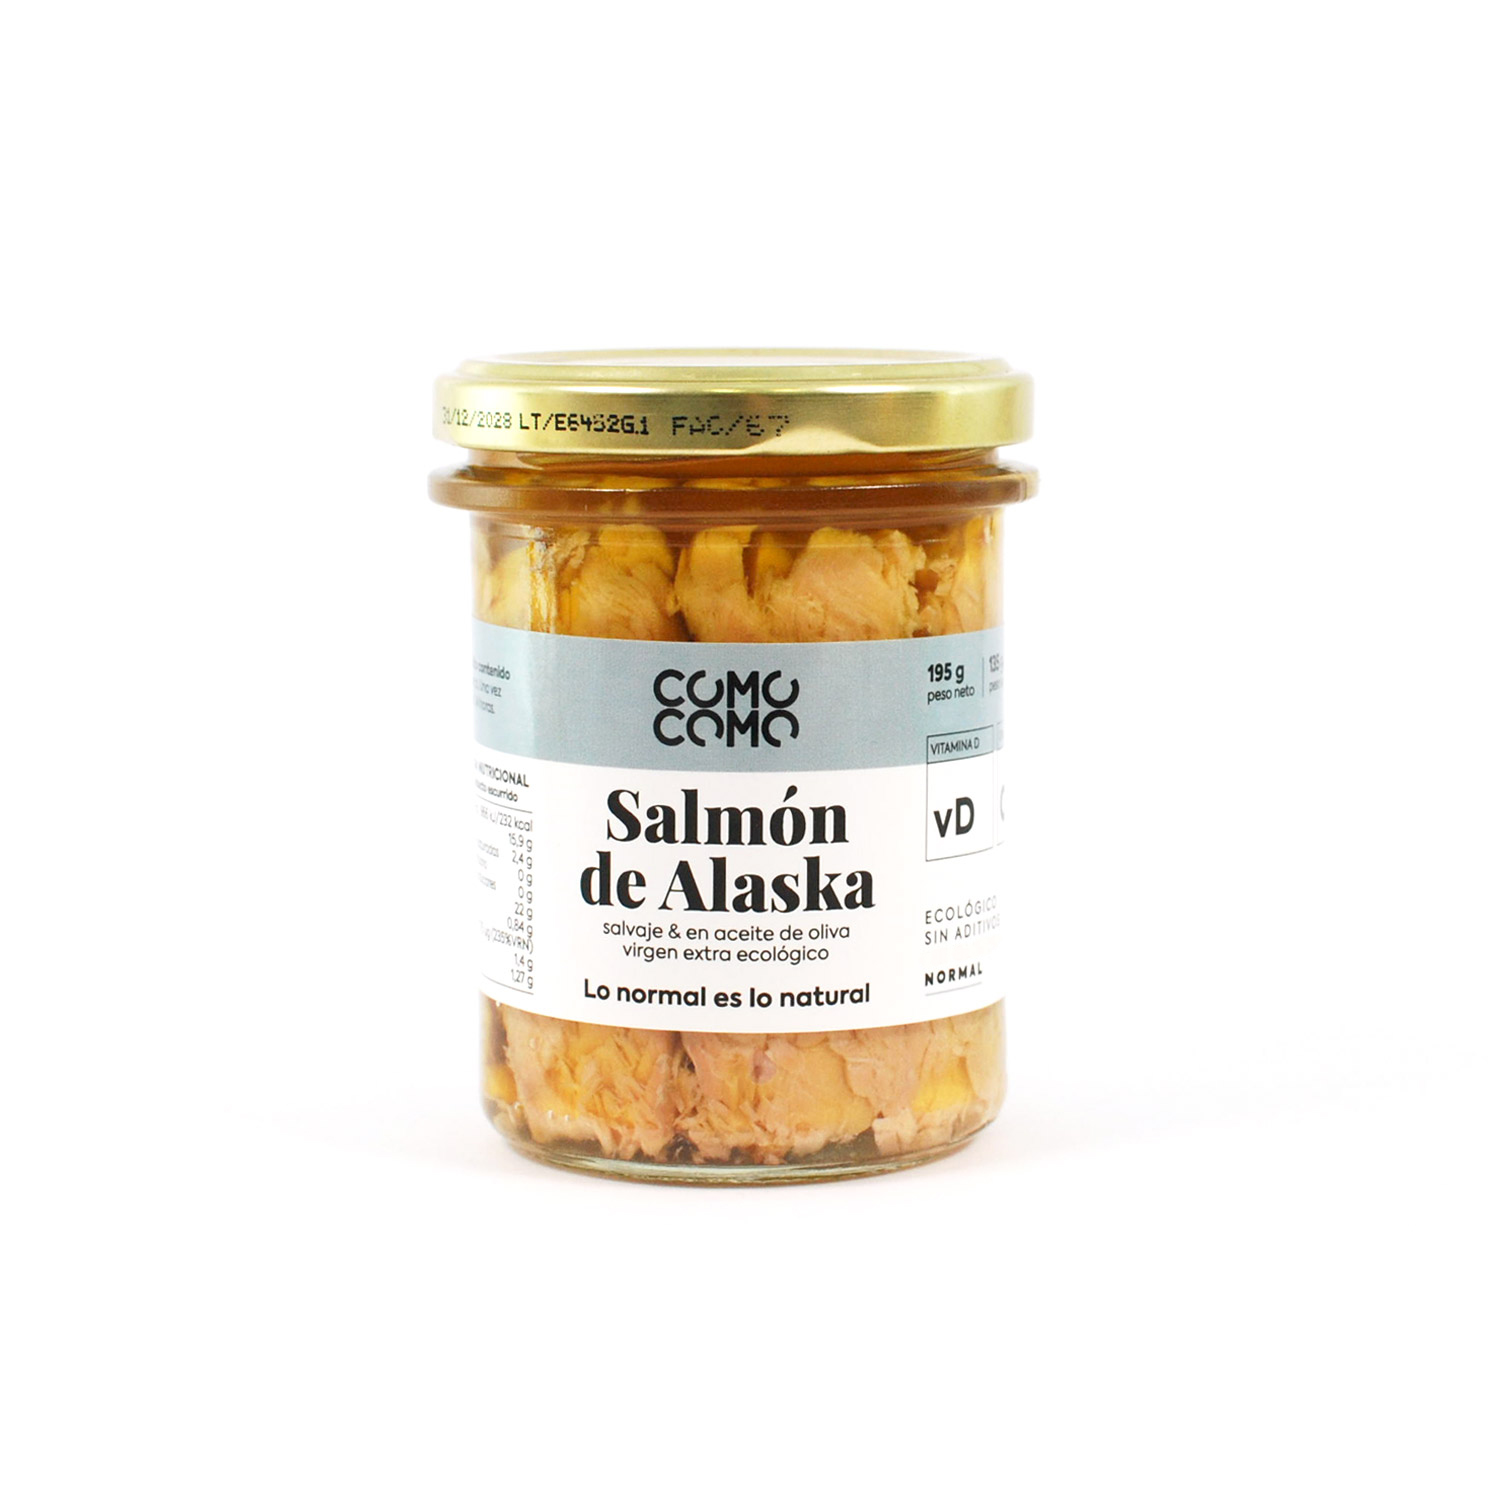 Salmón salvaje de Alaska en aceite de oliva virgen extra ecológico